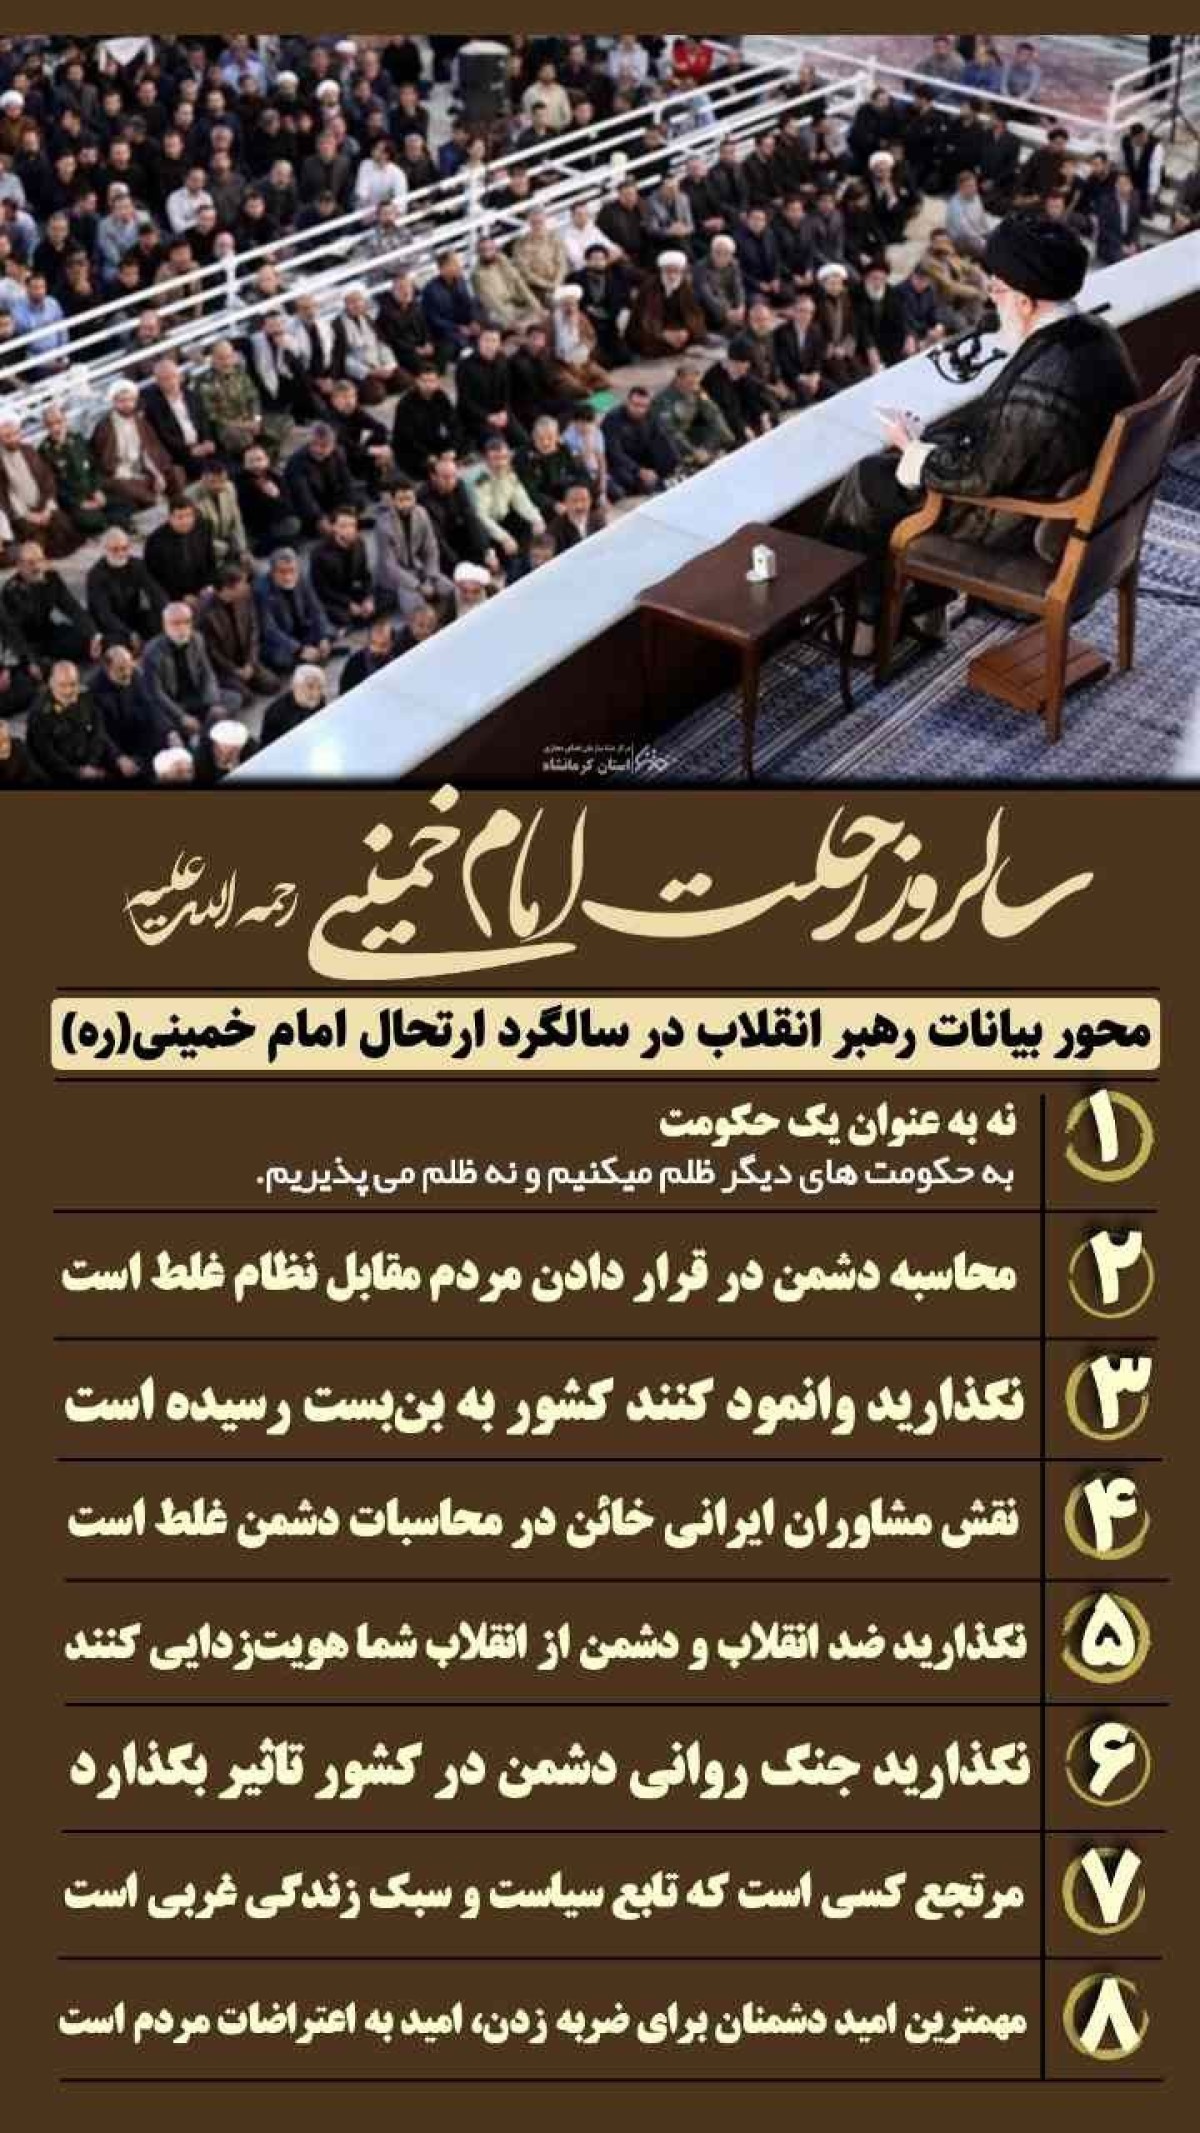 مهمترین محور بیانات رهبر انقلاب در مراسم سالگرد ارتحال امام خمینی (ره)